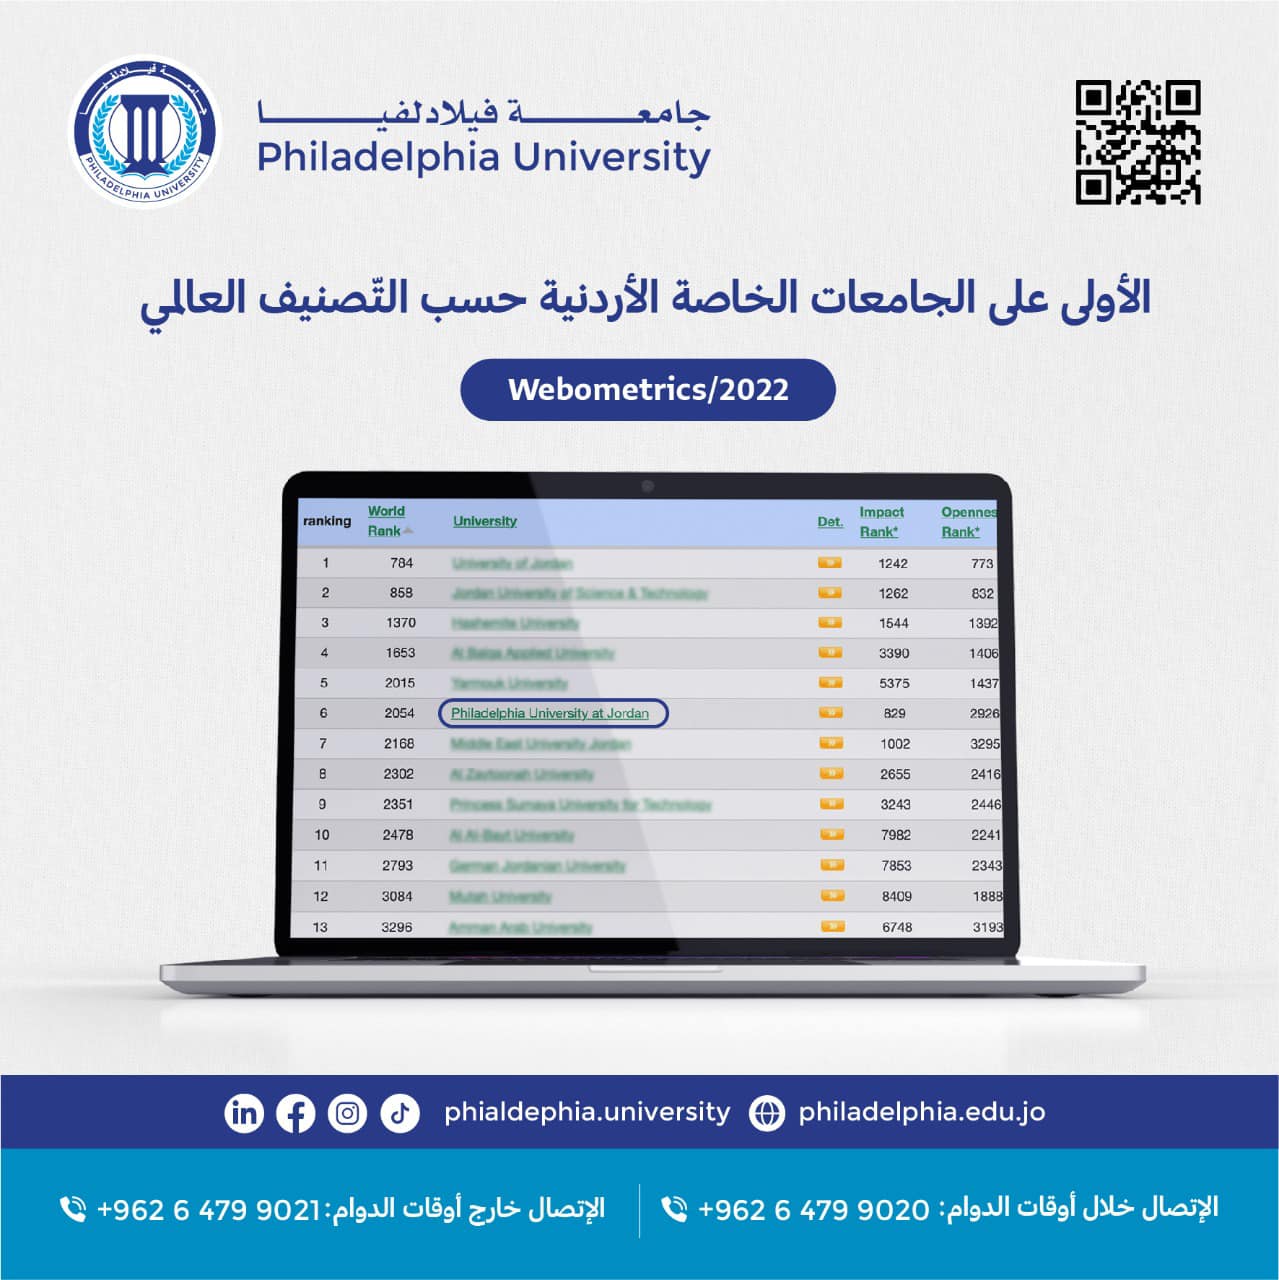 "فيلادلفيا" الأولى بين الجامعات الأردنية الخاصة حسب تصنيف ويبومتركس الإسباني لتقييم الجامعات والمعاهد العالمية